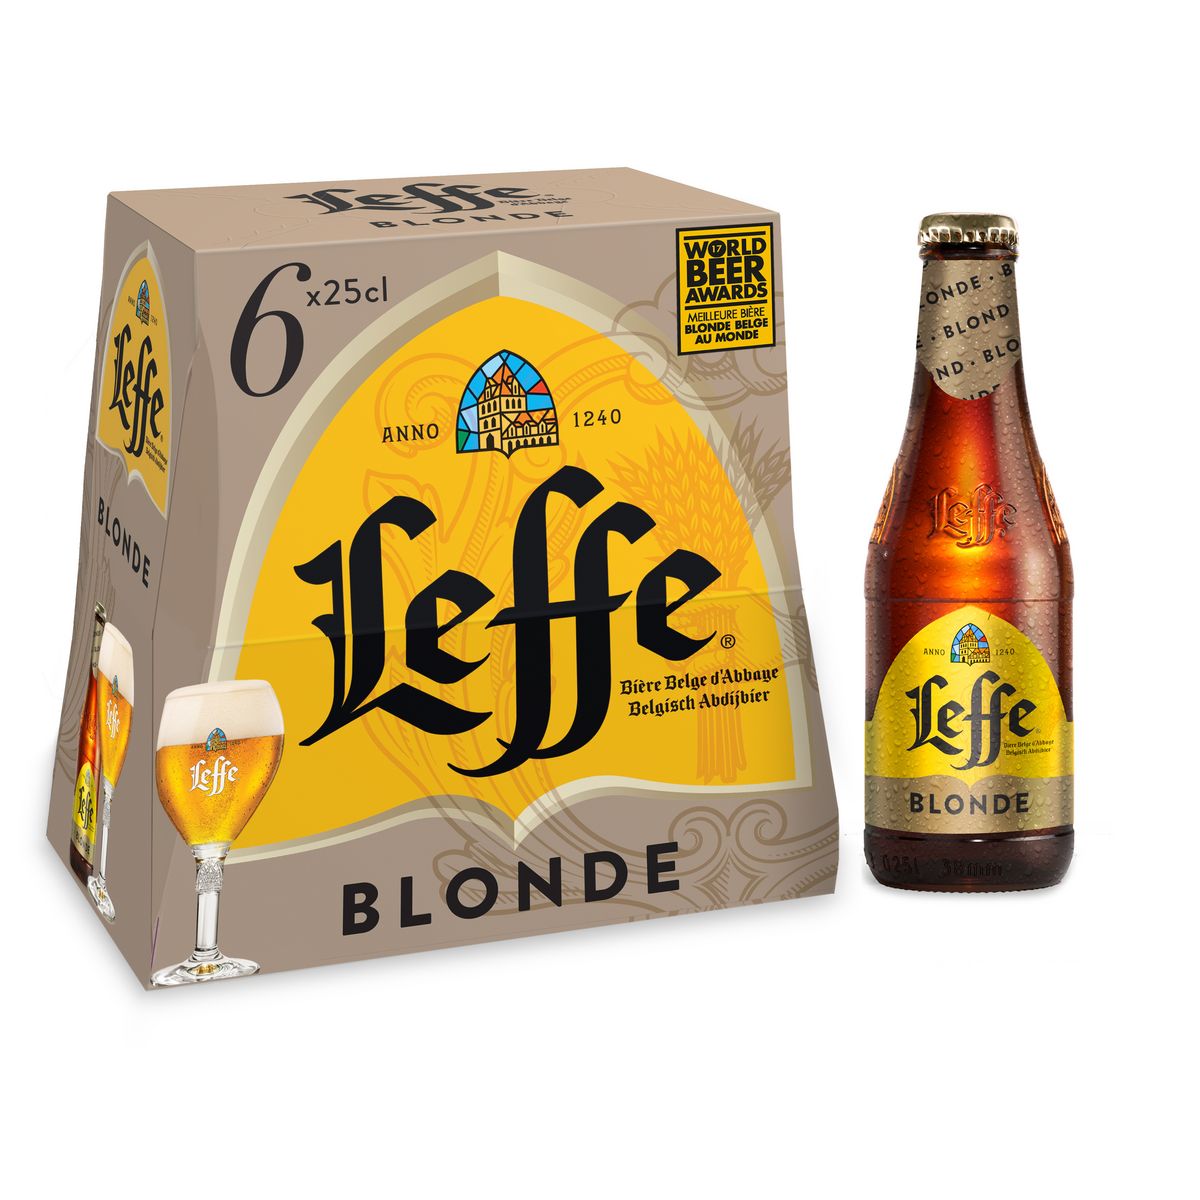 LEFFE Bière blonde 6,6% bouteilles 6x25cl